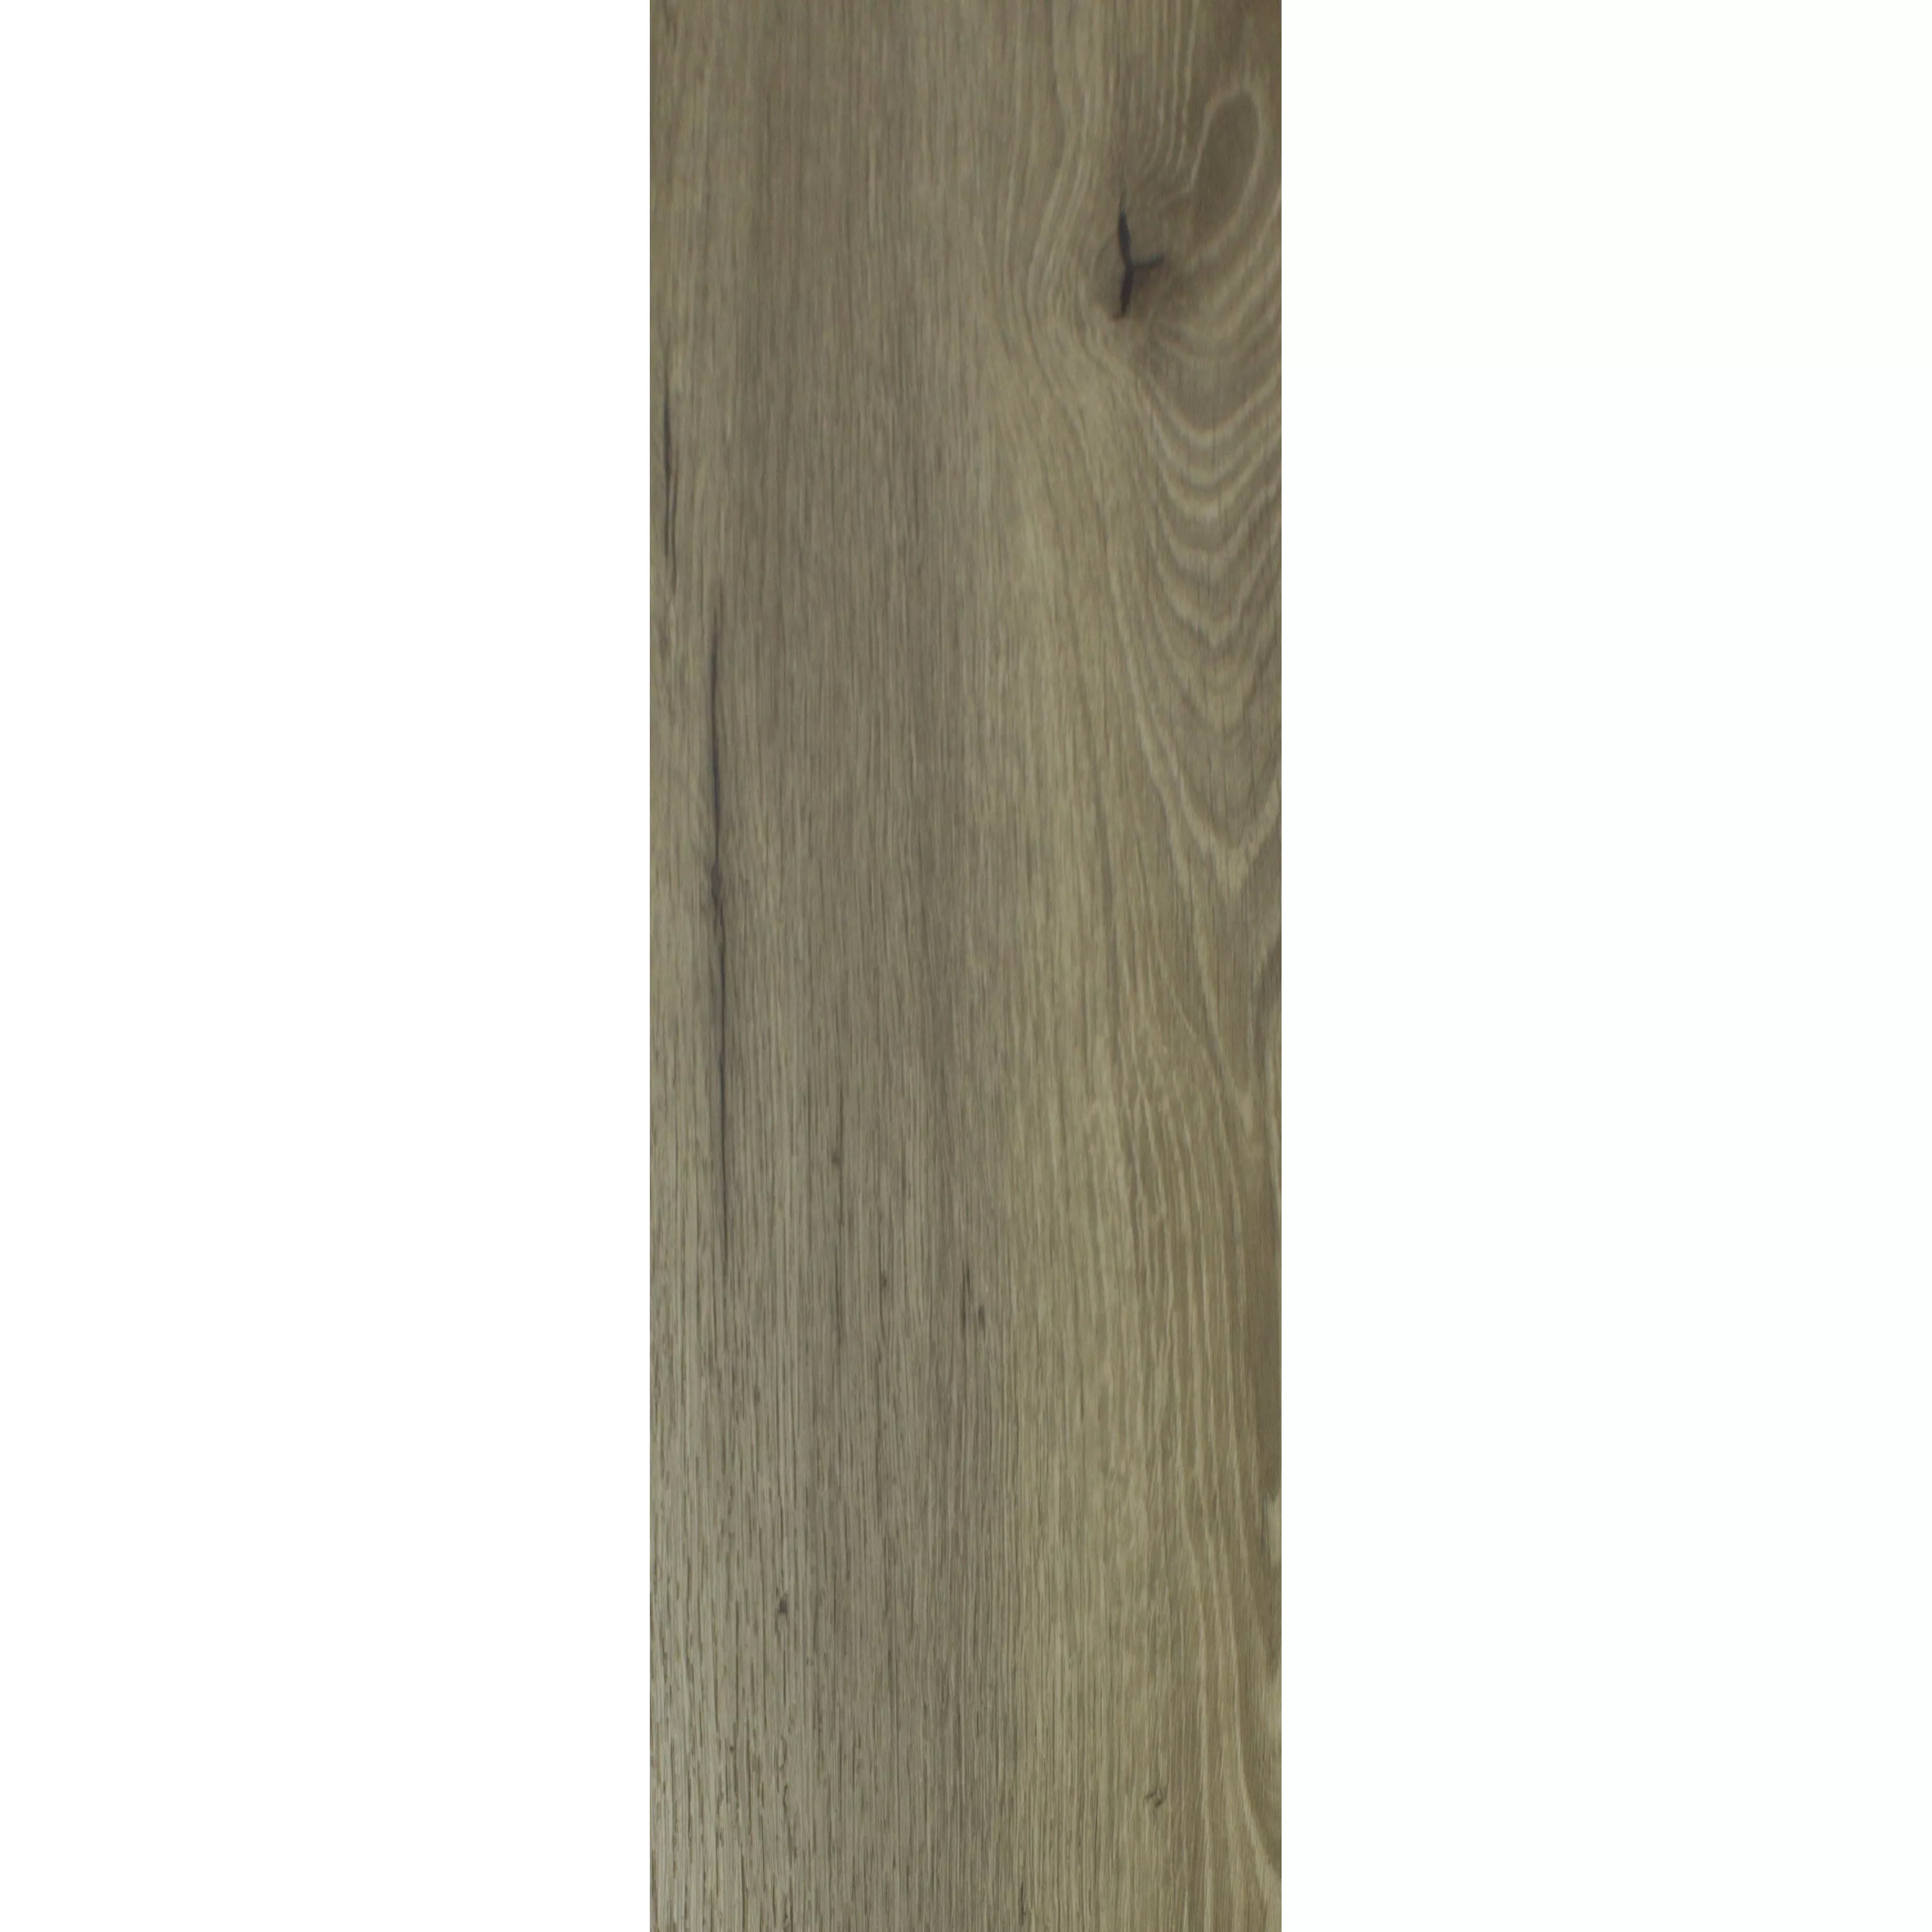 Piastrelle In Vinile Vinile Adesivo Newcastle 23,2x122,7cm Marrone